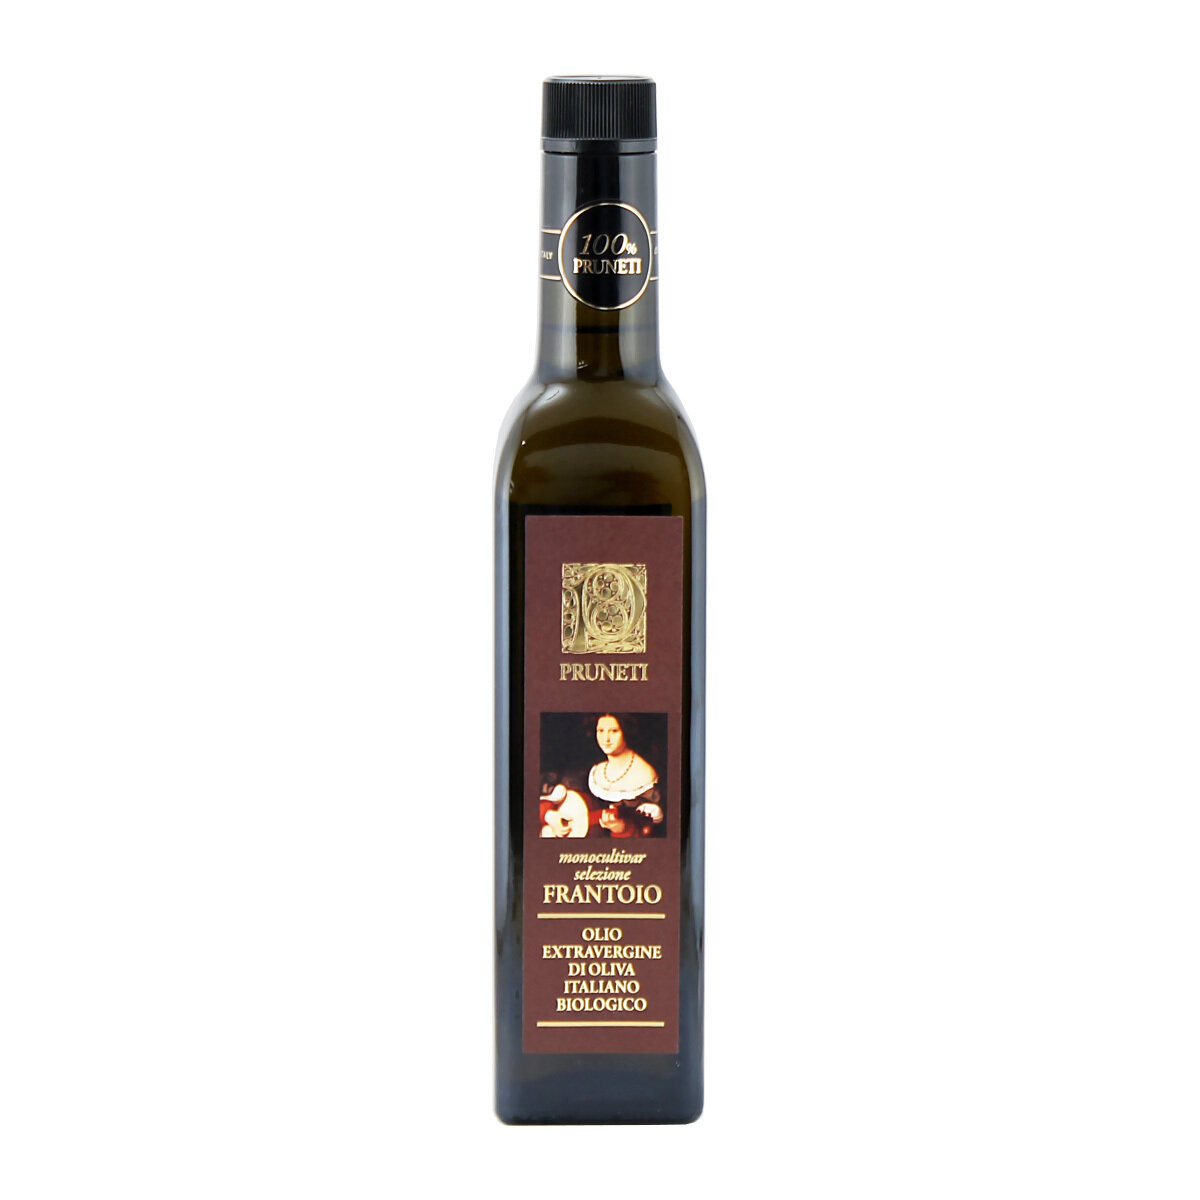 Luomu extra vergin -oliiviöljy Frantoio-oliiveja | PRUNETI | 500ml